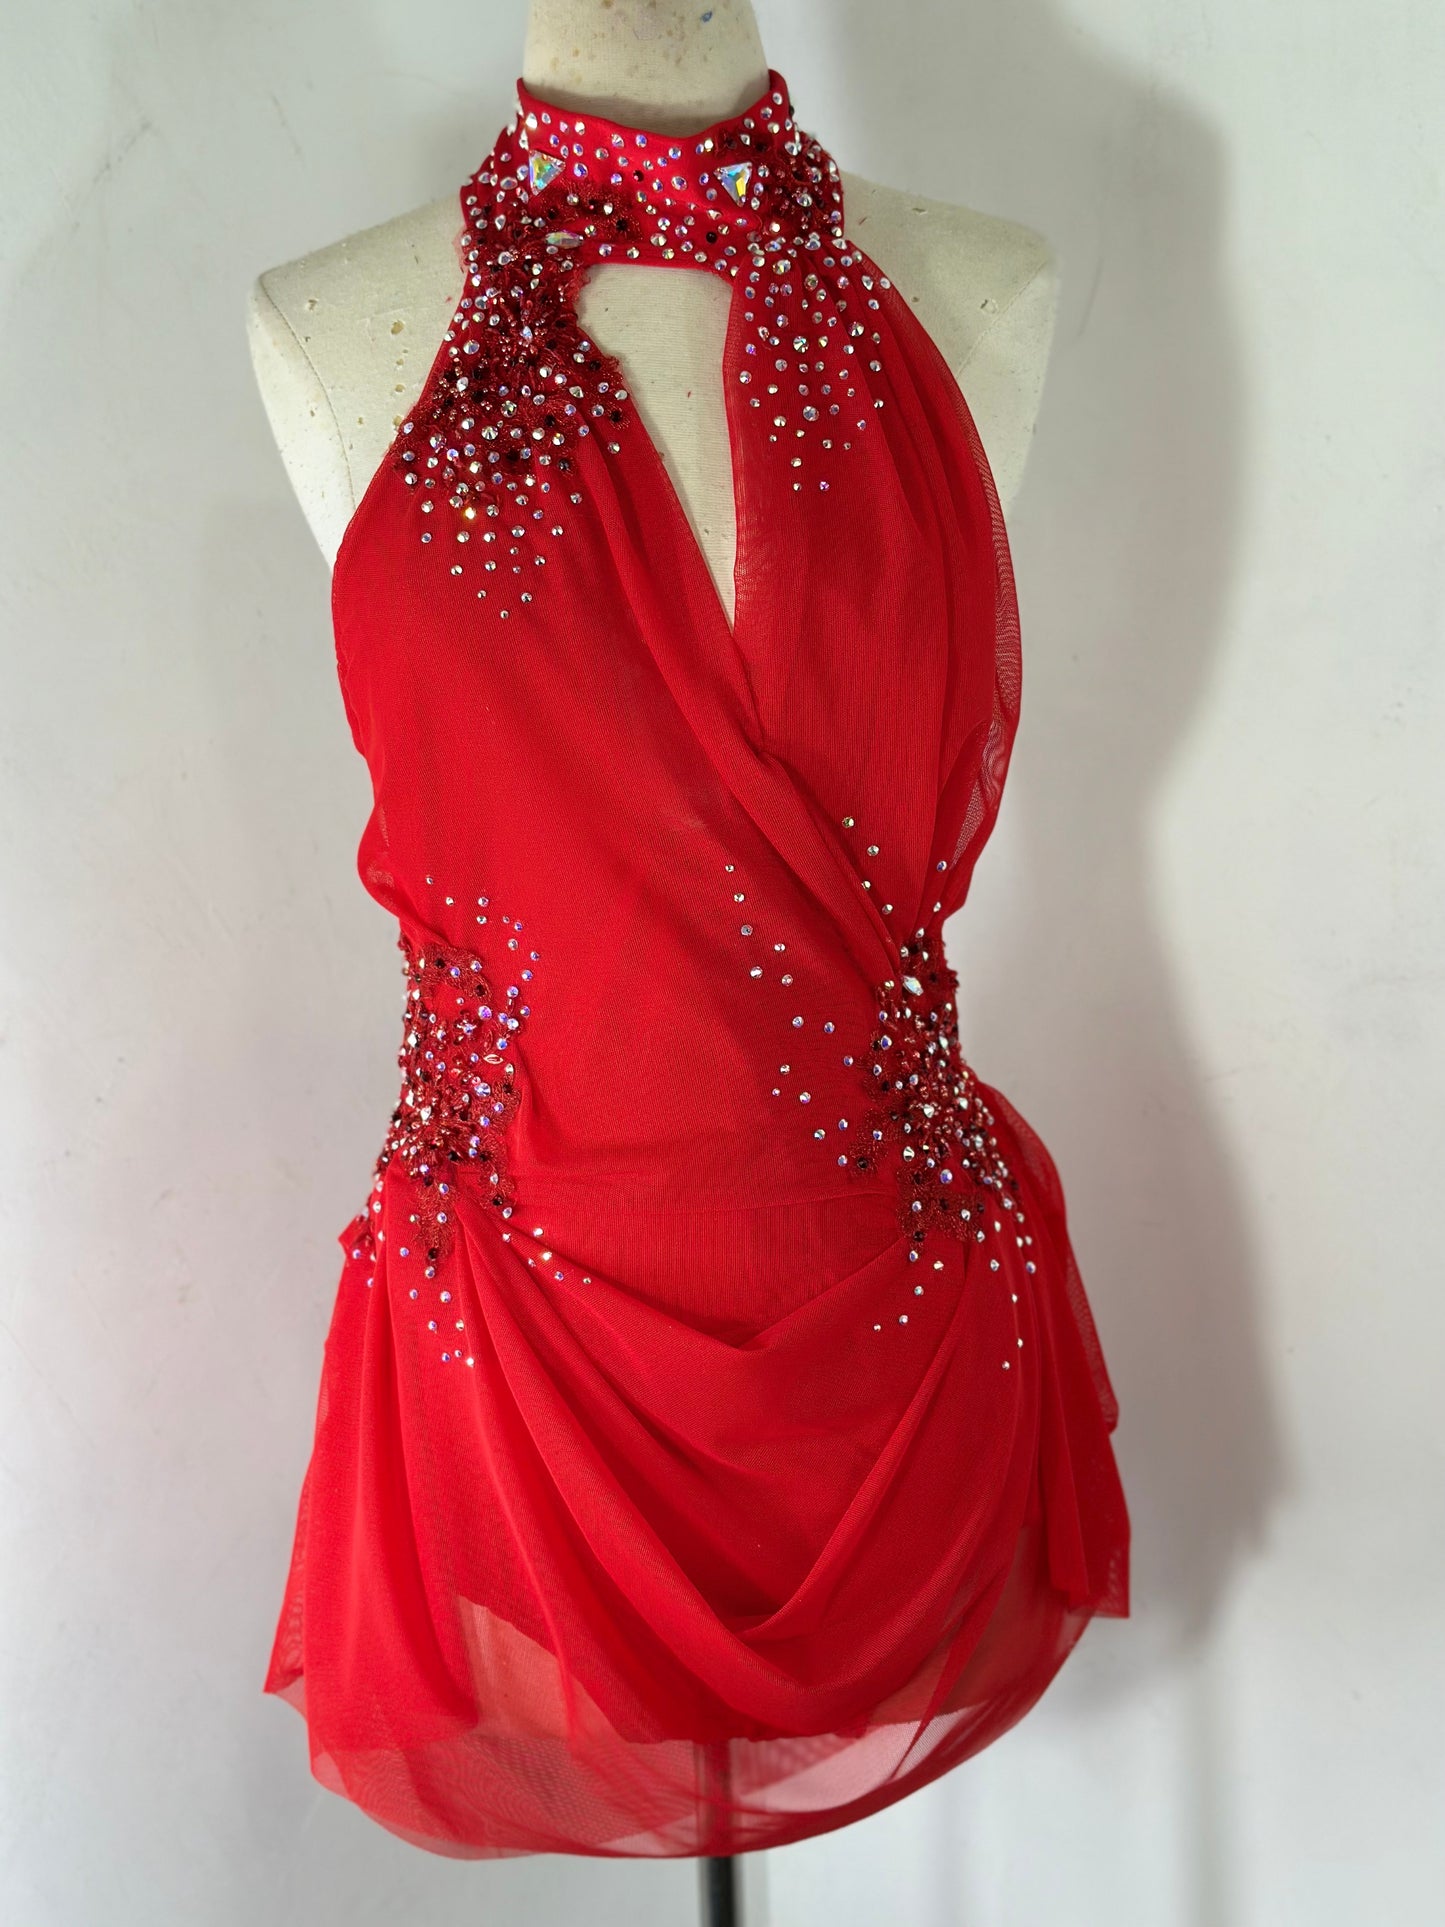 Crimson Red beaded applique dance costume